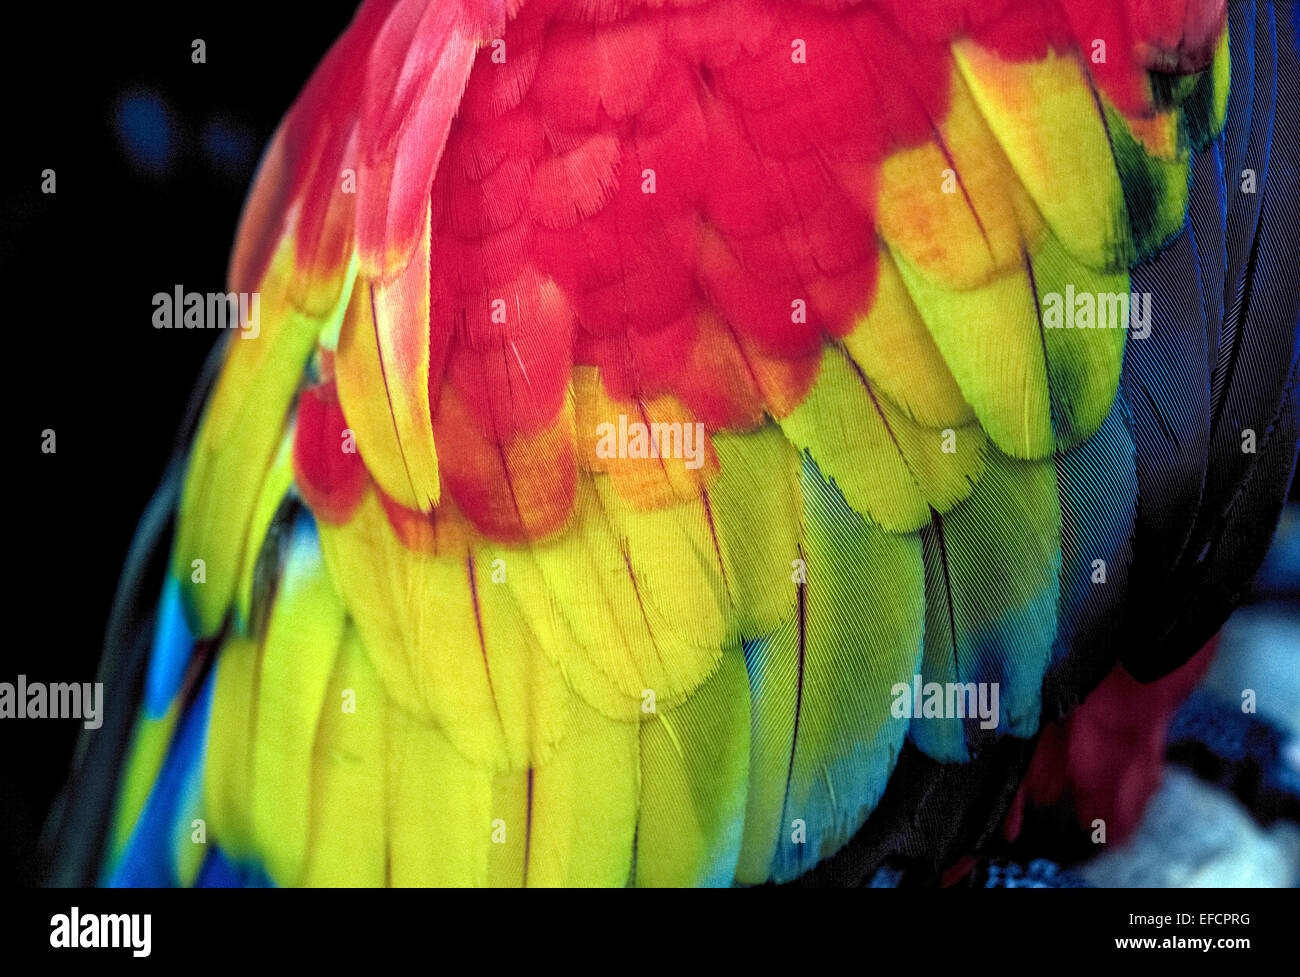 Eine Nahaufnahme von den Federn von einem hellroten Aras zeigt die strahlenden roten, gelben und blauen Farben des dieser Papageienarten, die in Südamerika heimisch ist. Stockfoto